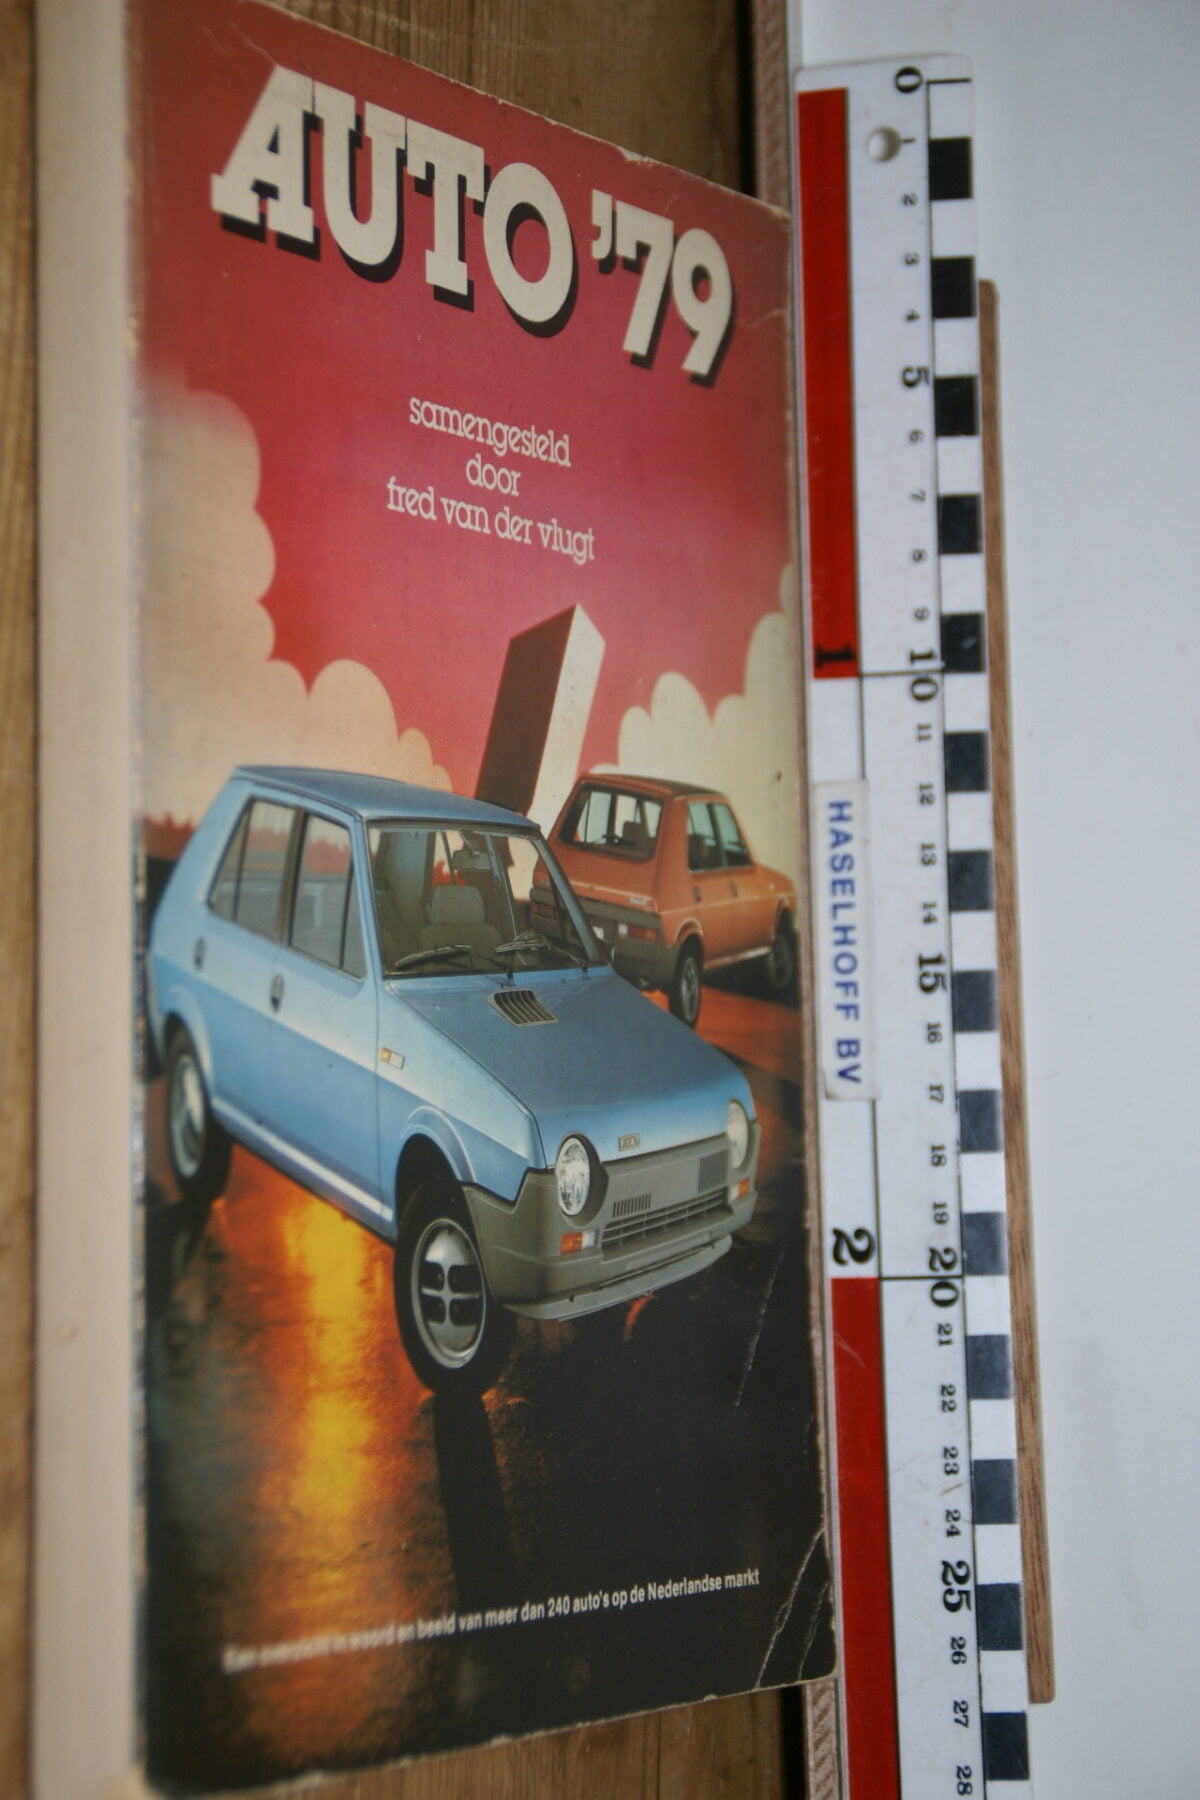 DSC02892 1979 Autojaarboek alle auto's Fred van der Vlugt-fc696978